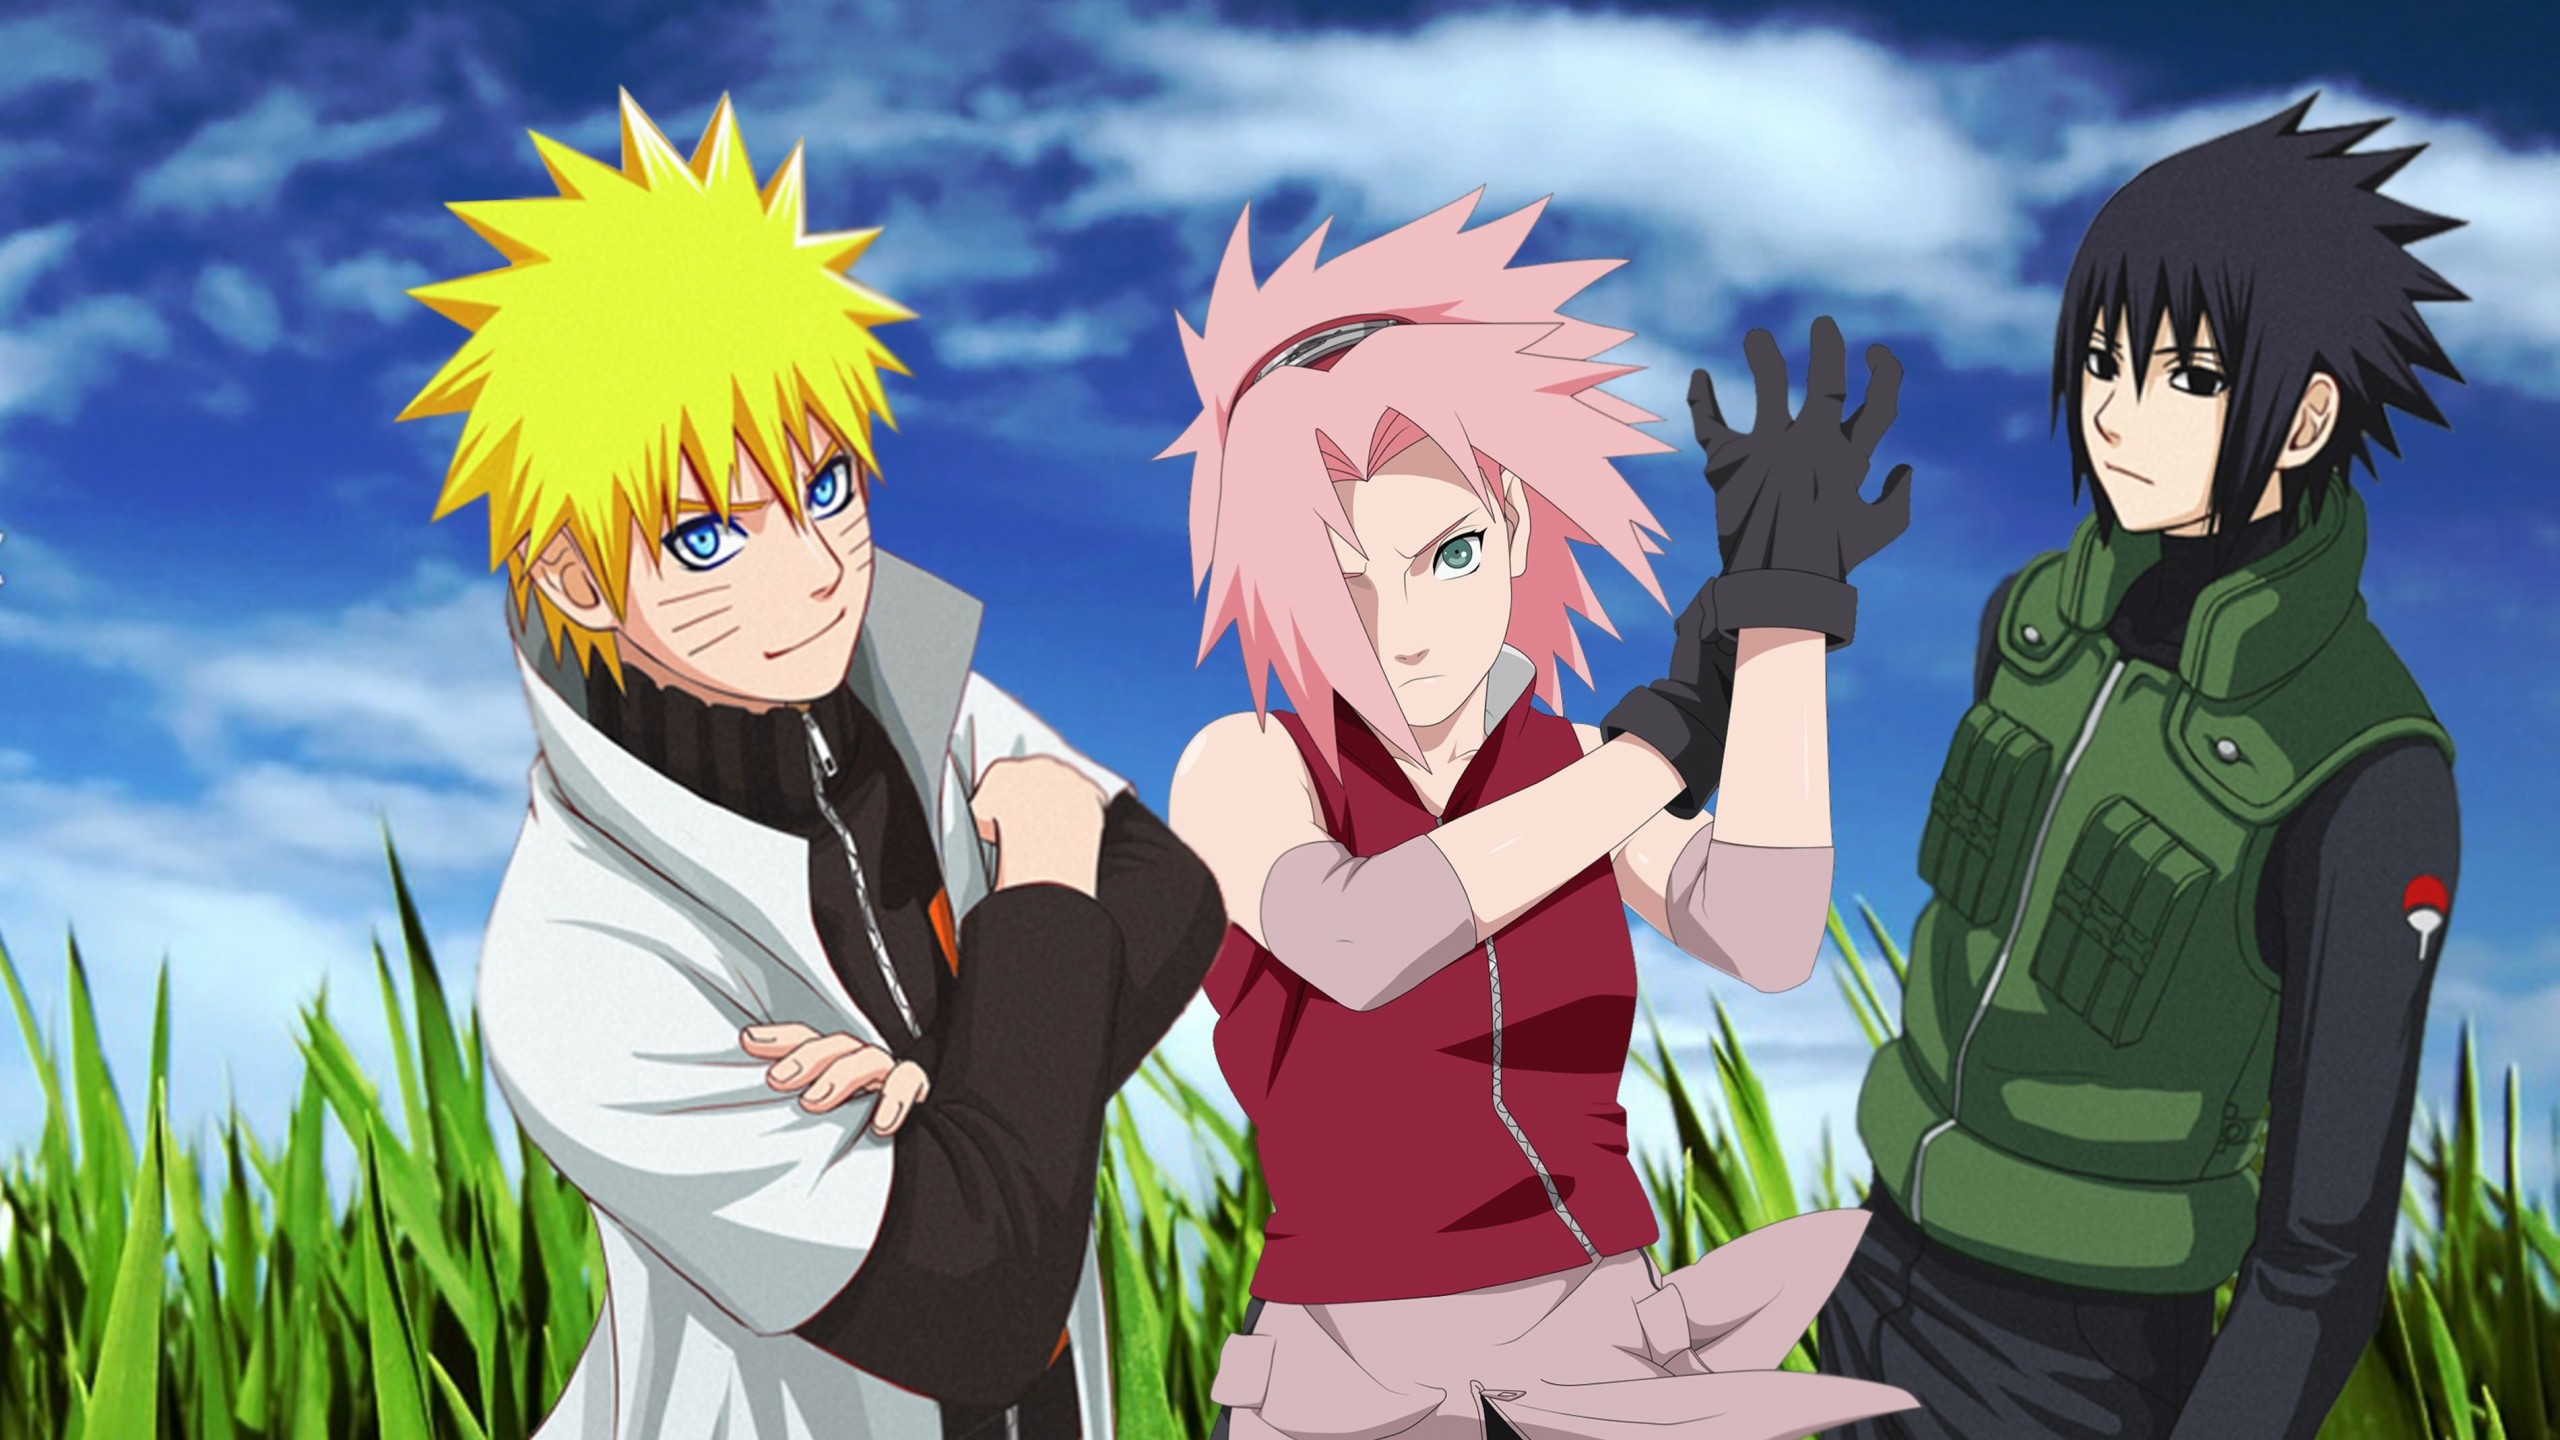 Naruto, Sakura and Sasuke Wallpaper for Social Media YouTube Channel Art